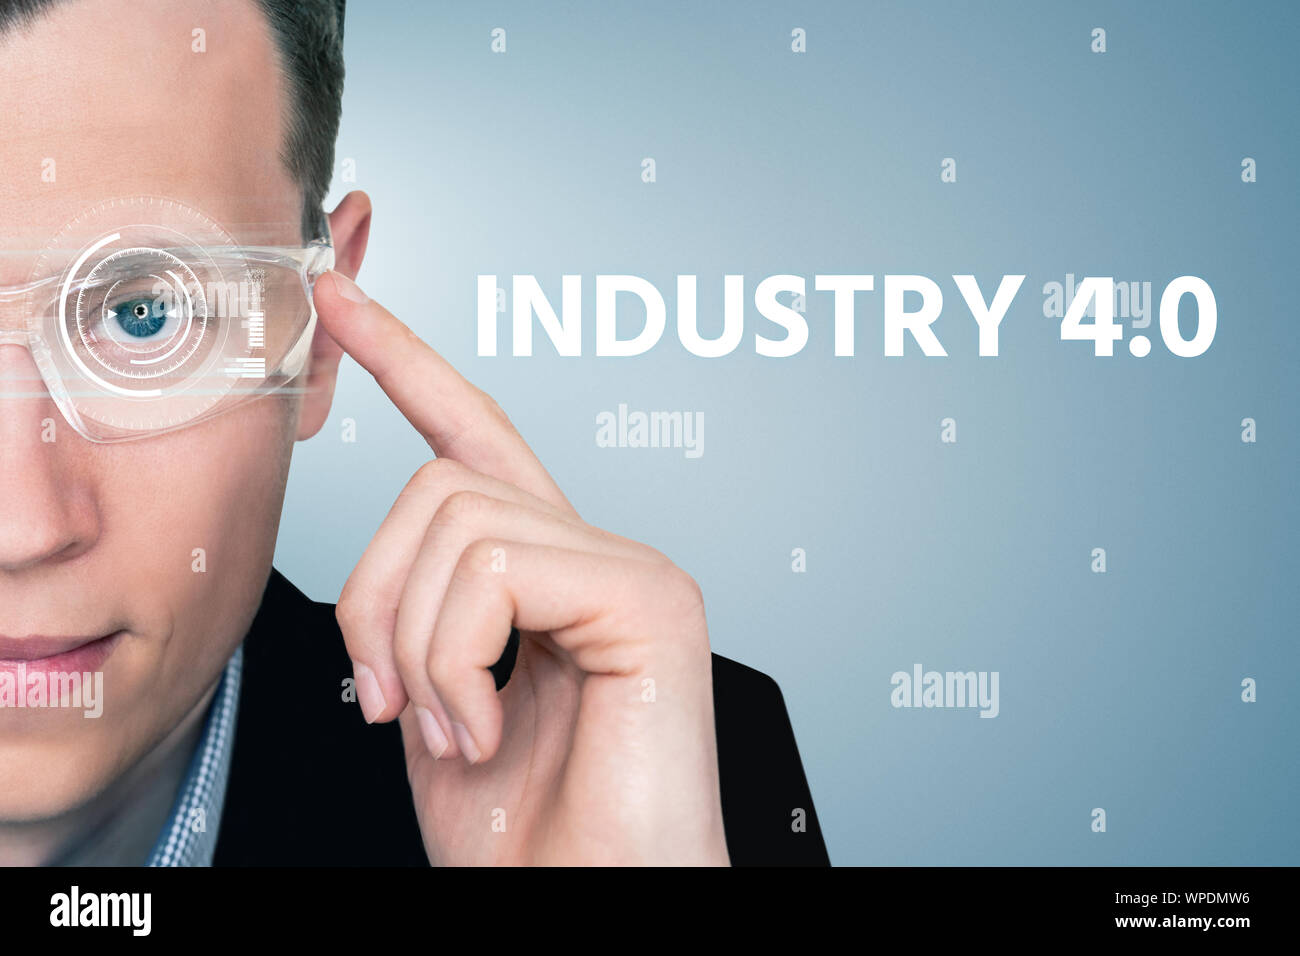 Ein Mann in der erweiterten Realität Gläser mit einem Head-Up Display.  Industrie 4.0 Konzept Stockfotografie - Alamy